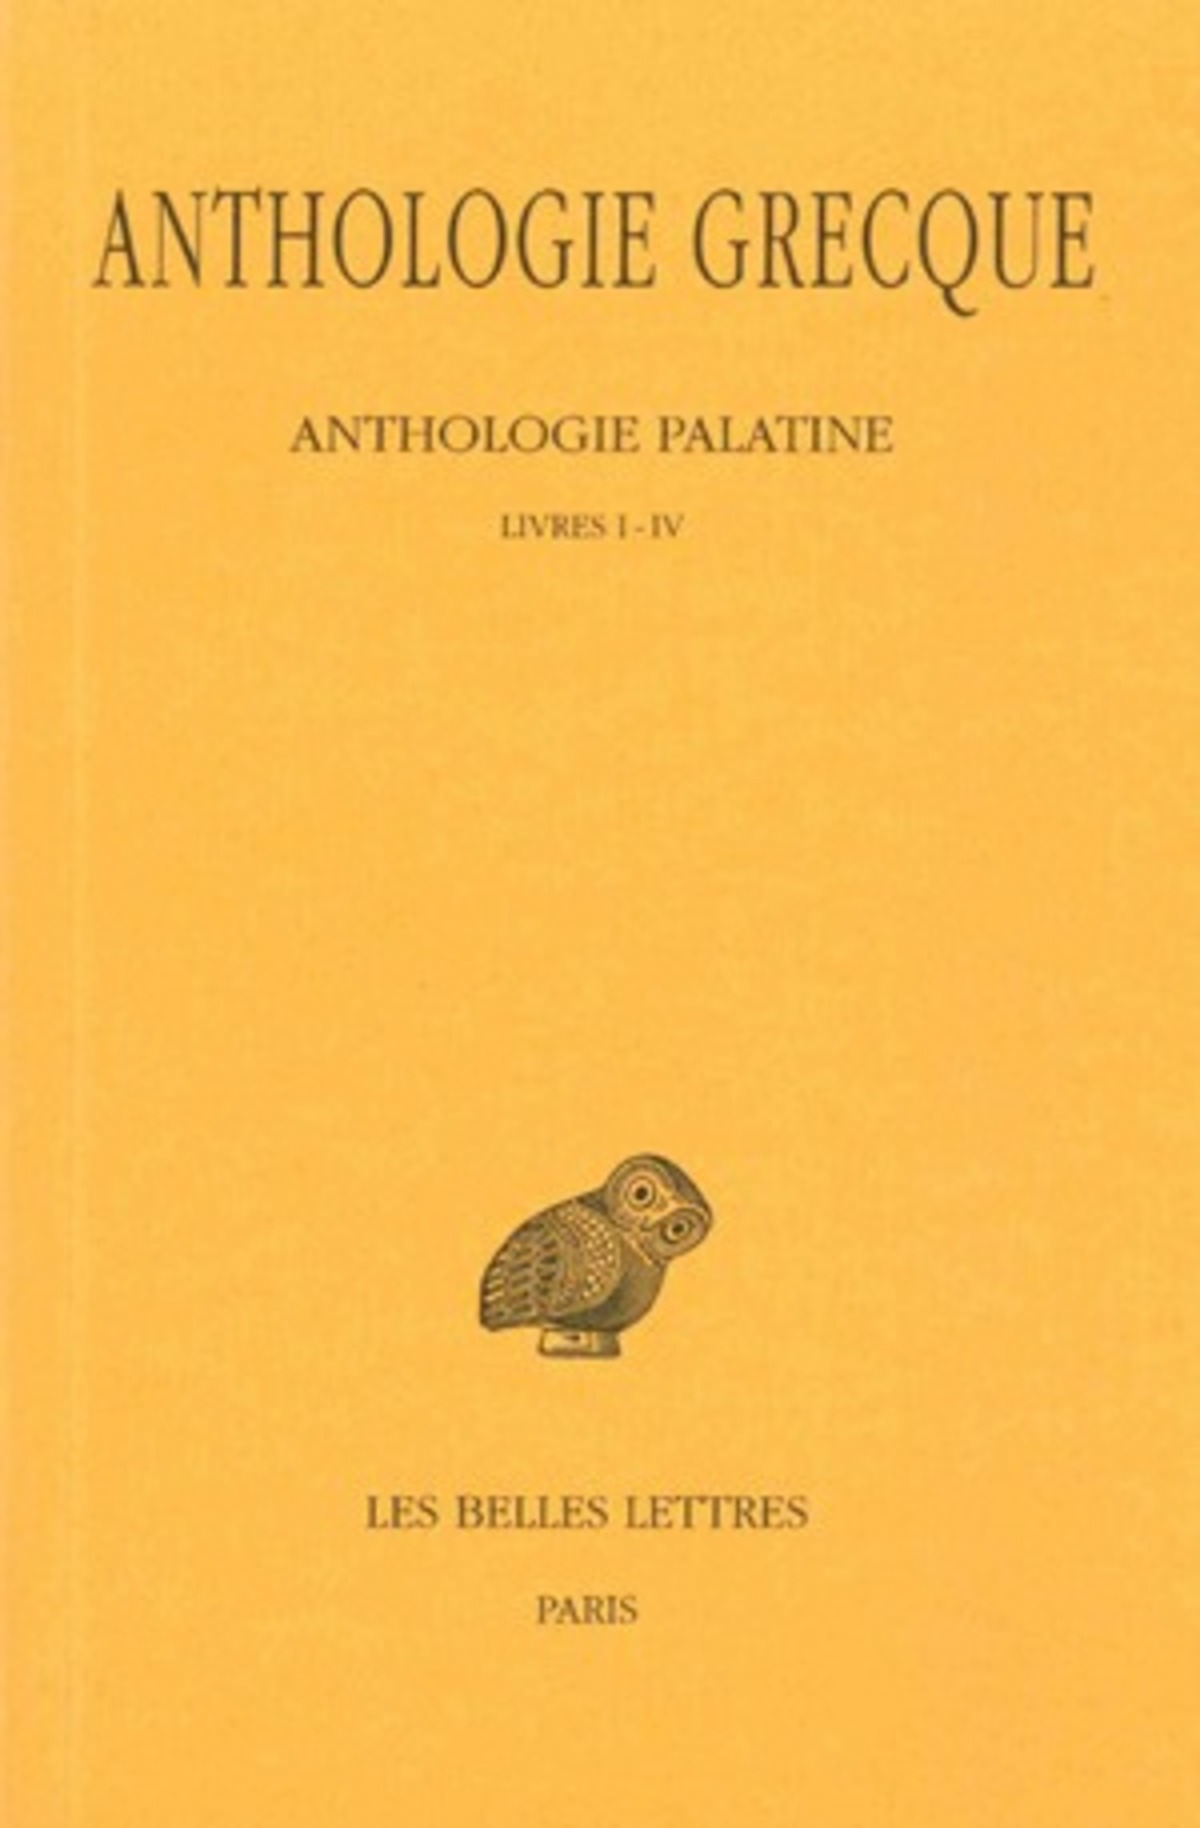 Anthologie grecque. Tome I: Anthologie palatine, Livres I-IV